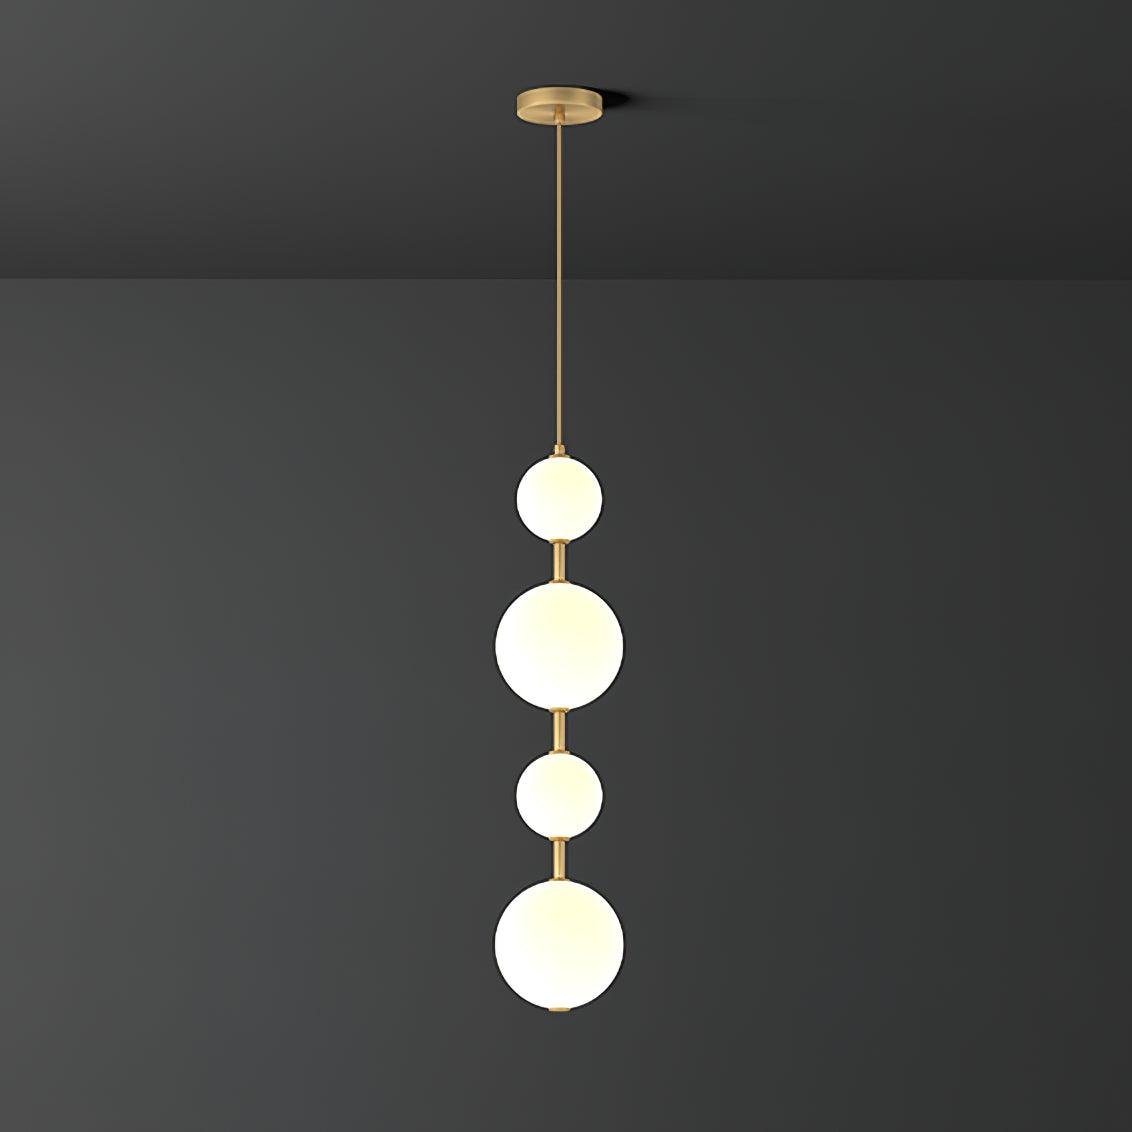 Brass Vertical Globe Pendant Lamp in Cool White, Dimensions ∅ 5.9″ x H 25.6″ (Dia 15cm x H 65cm)